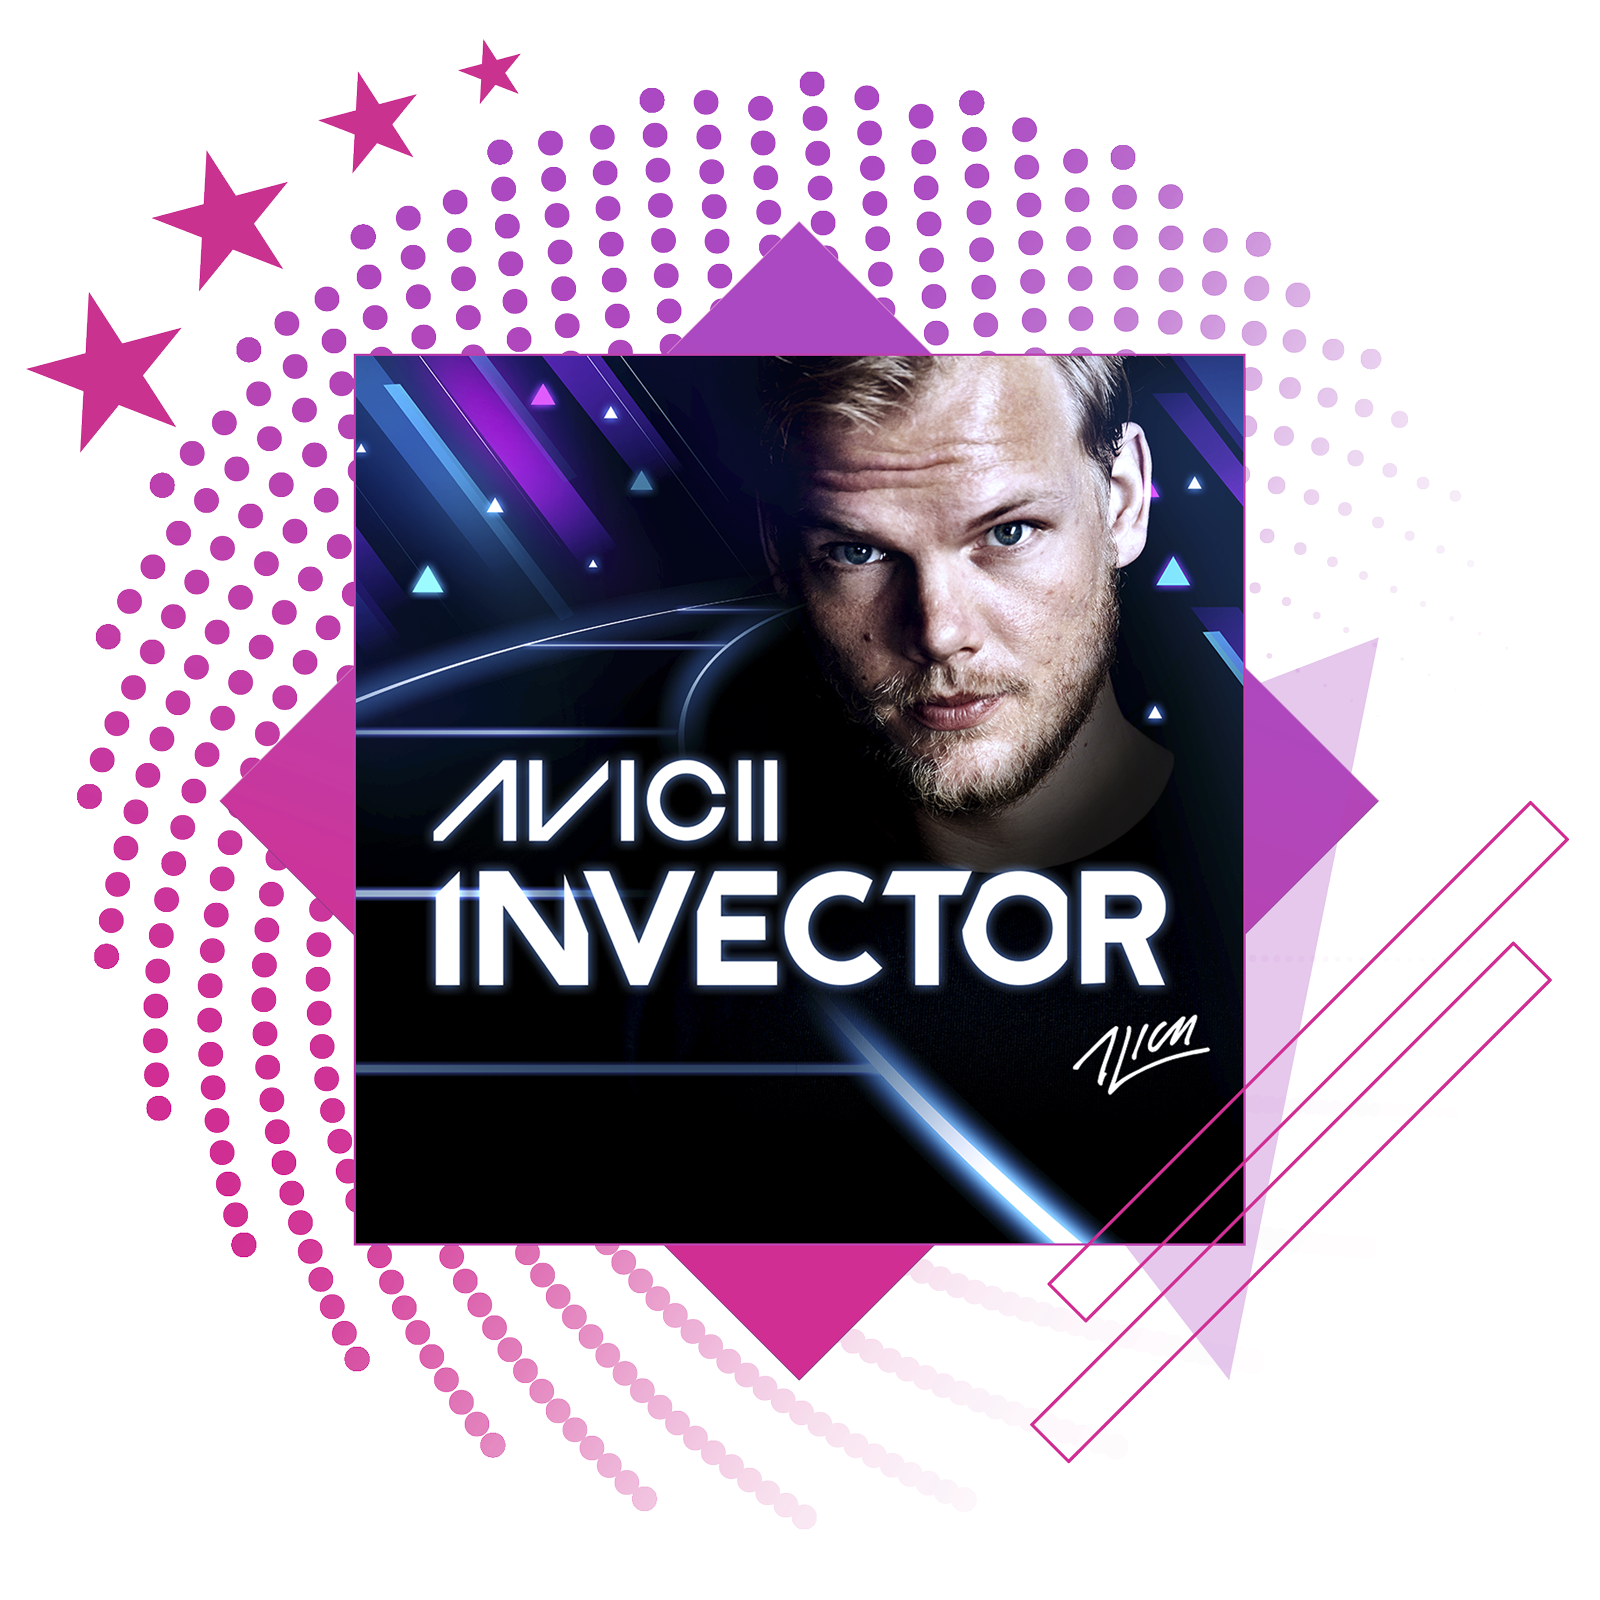 Най-добрите ритъм игри представят иконографско изображение от Aviici: Invector.